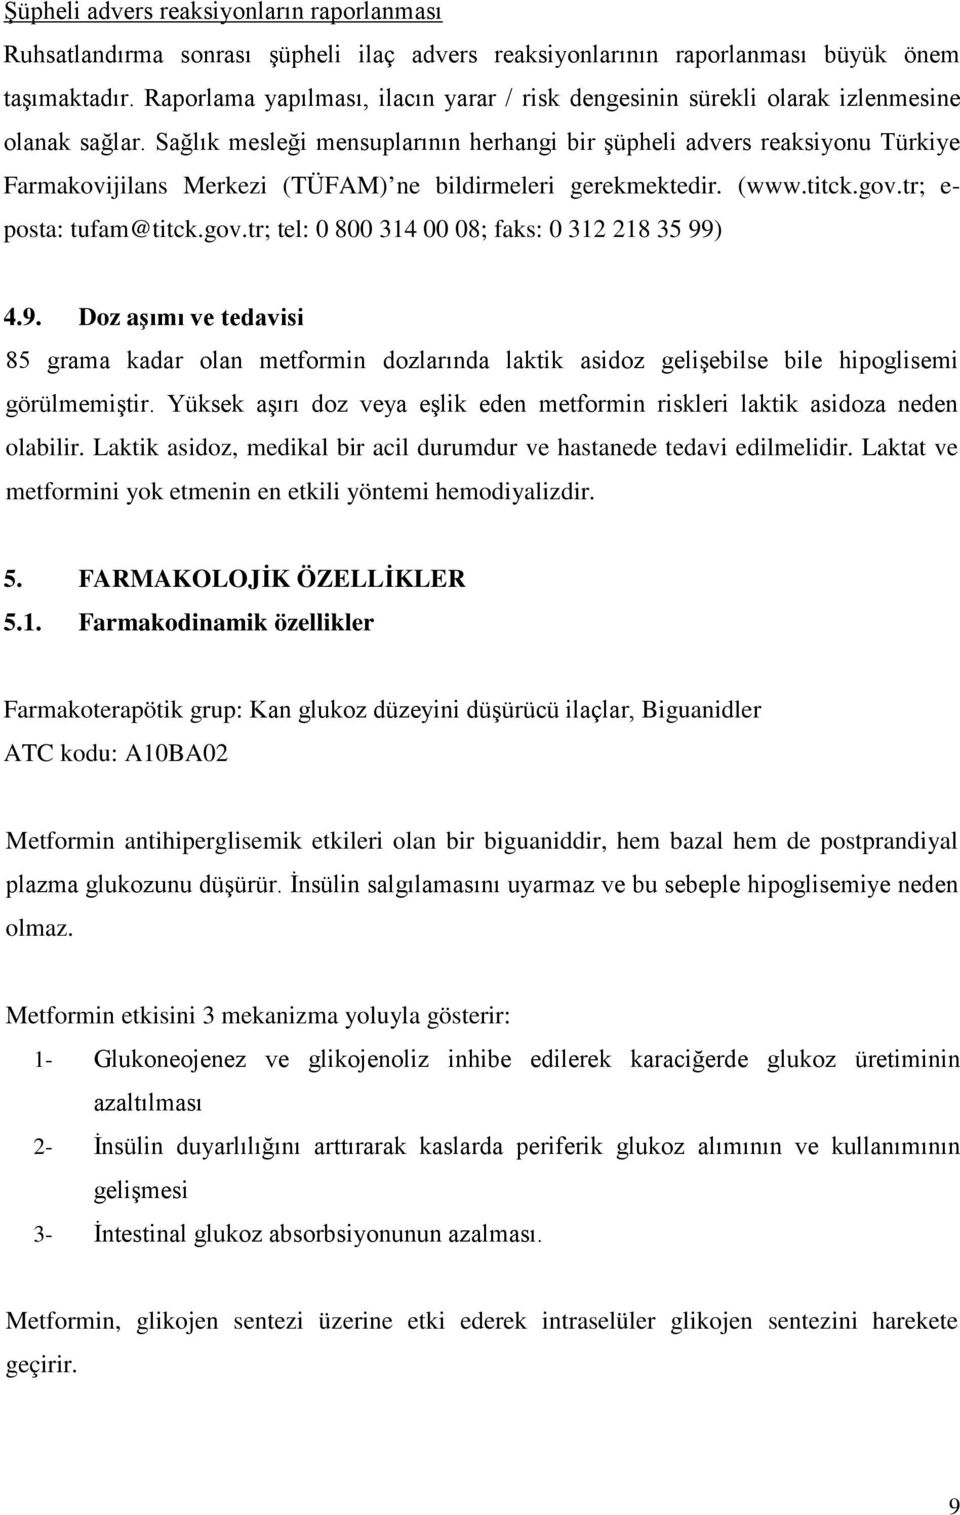 Sağlık mesleği mensuplarının herhangi bir şüpheli advers reaksiyonu Türkiye Farmakovijilans Merkezi (TÜFAM) ne bildirmeleri gerekmektedir. (www.titck.gov.